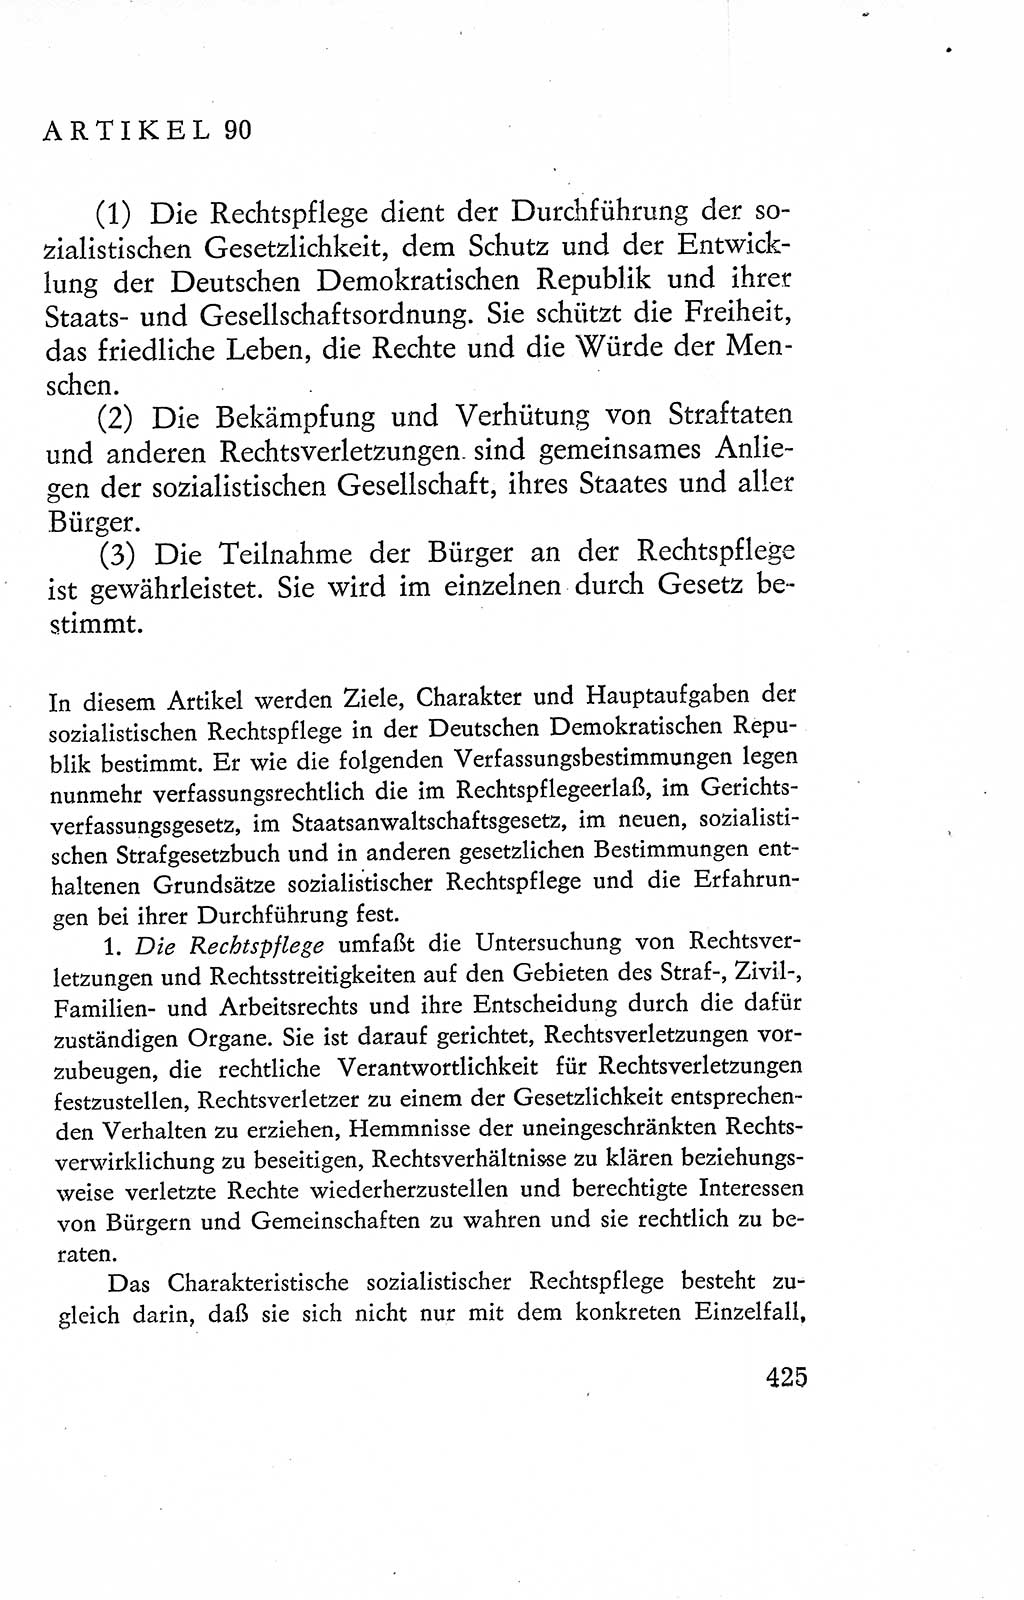 Verfassung der Deutschen Demokratischen Republik (DDR), Dokumente, Kommentar 1969, Band 2, Seite 425 (Verf. DDR Dok. Komm. 1969, Bd. 2, S. 425)